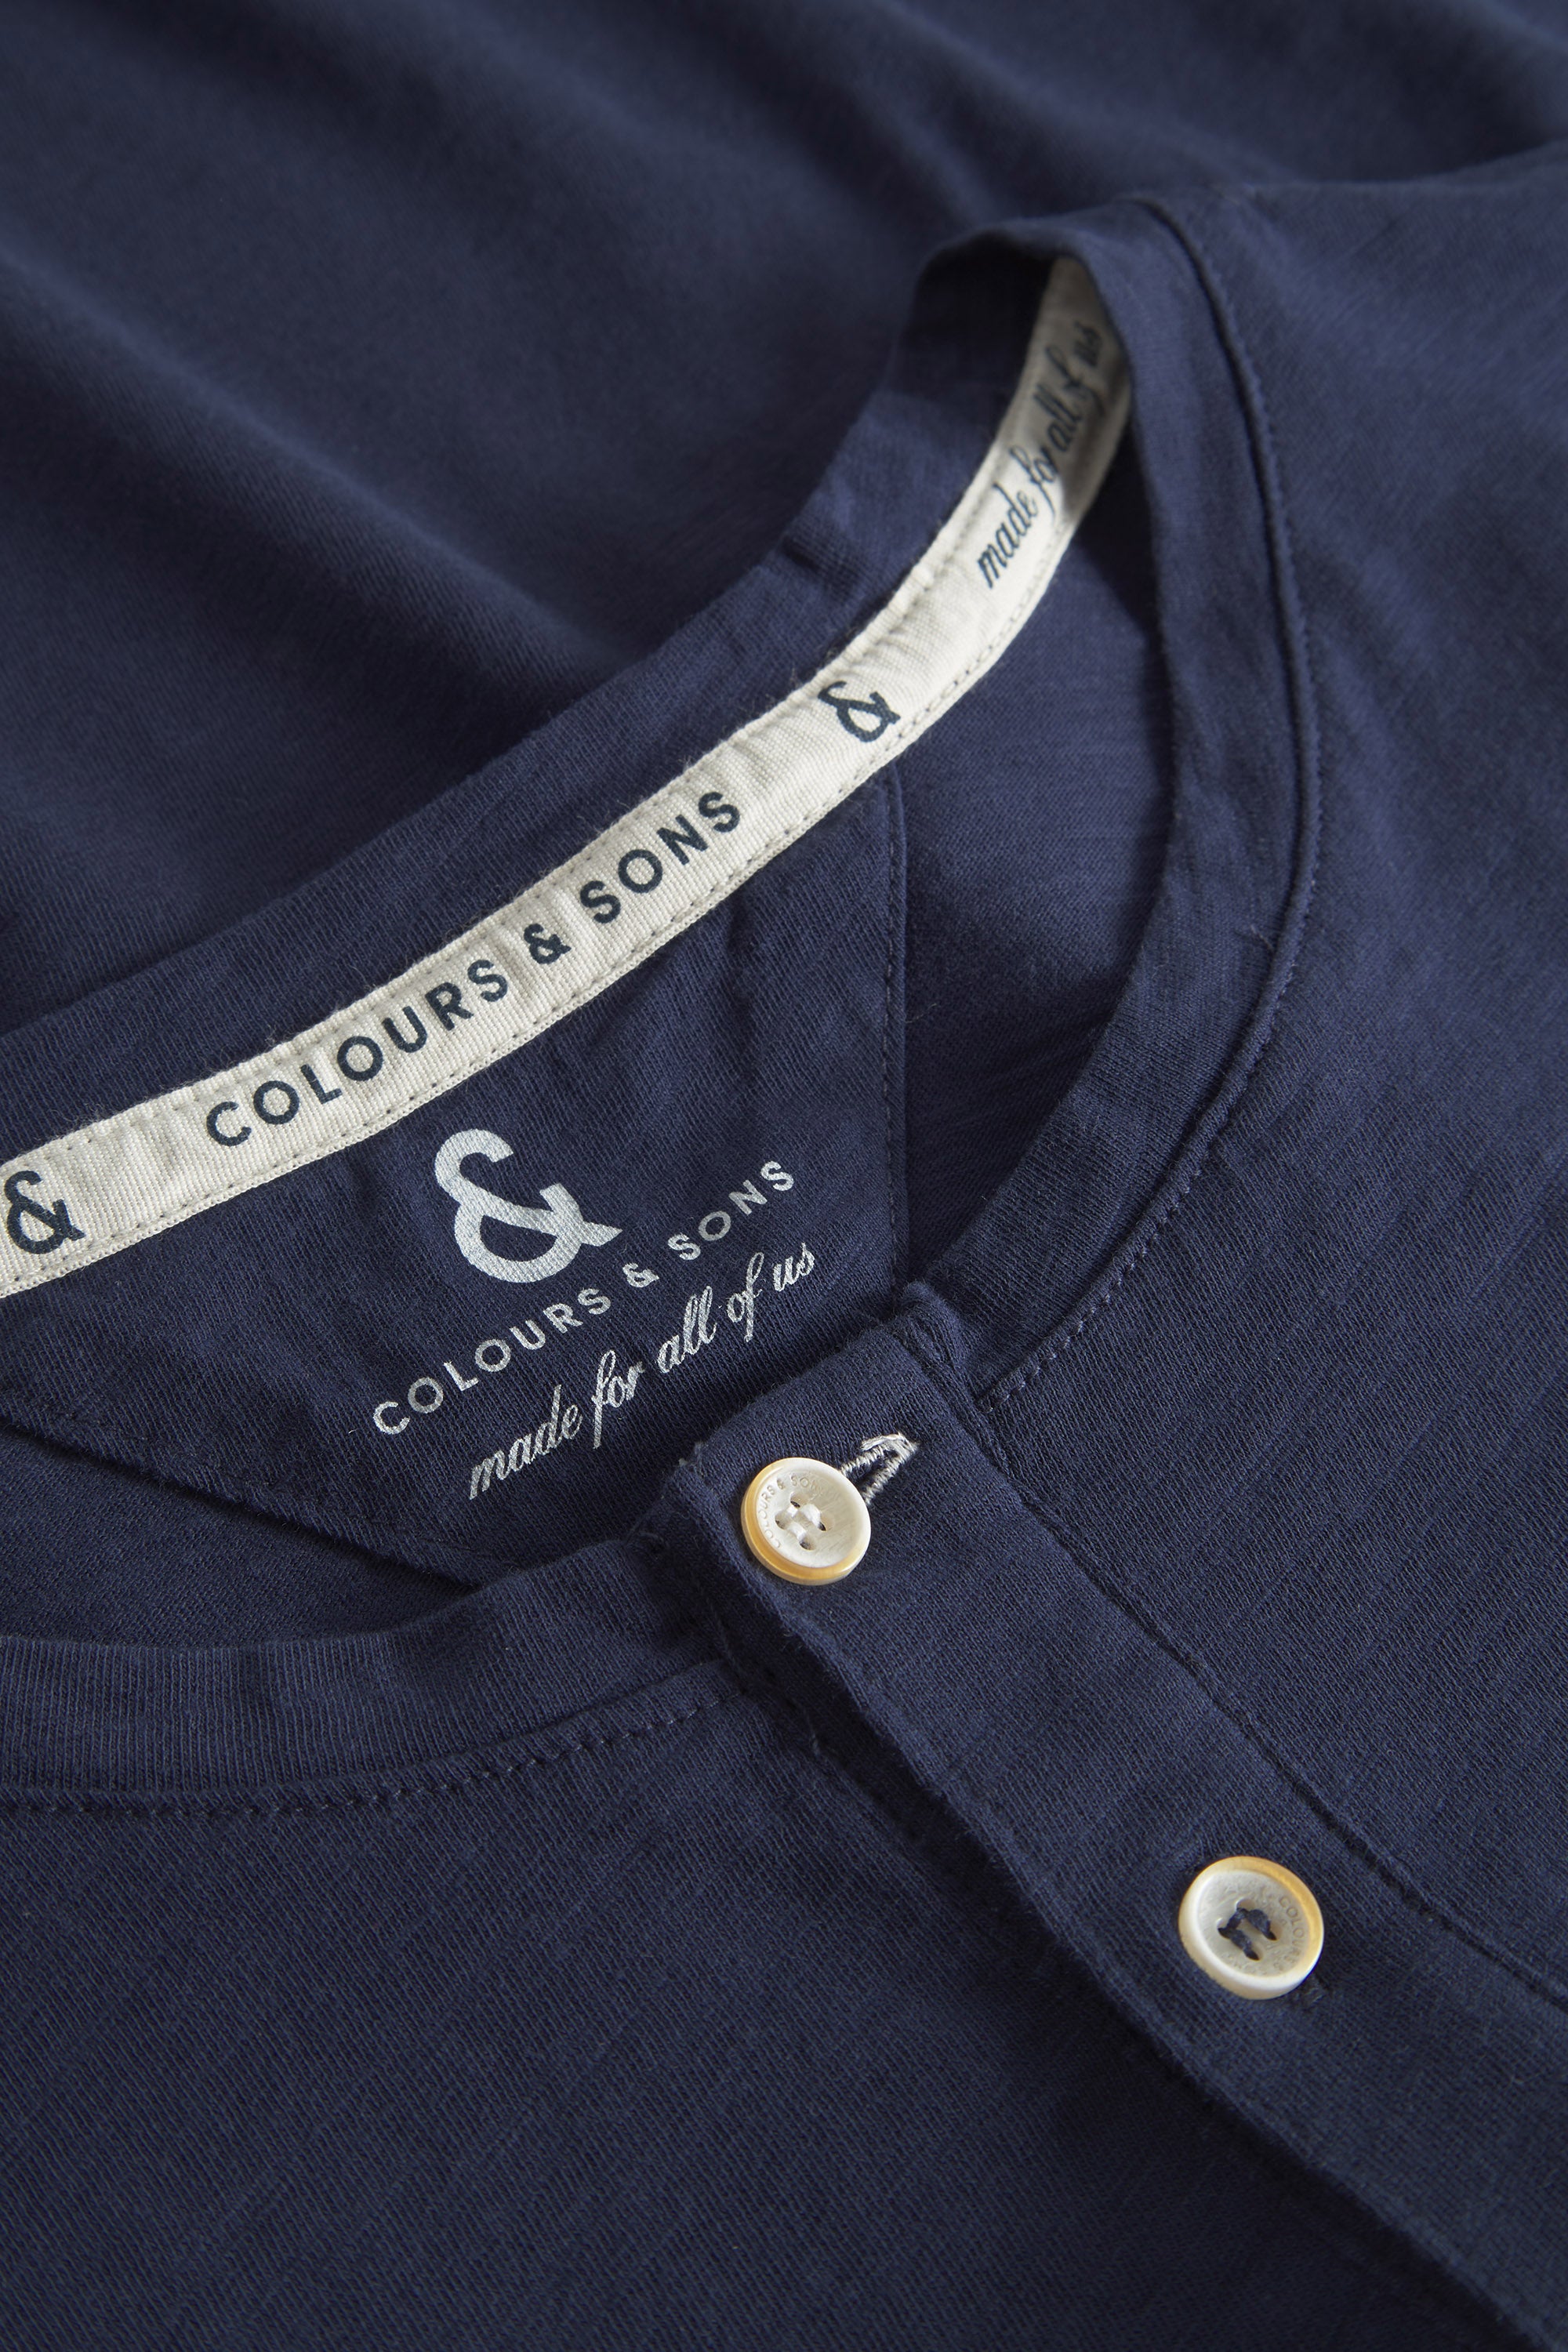 Herren T-Shirt, navy, 100% Baumwolle von Colours & Sons